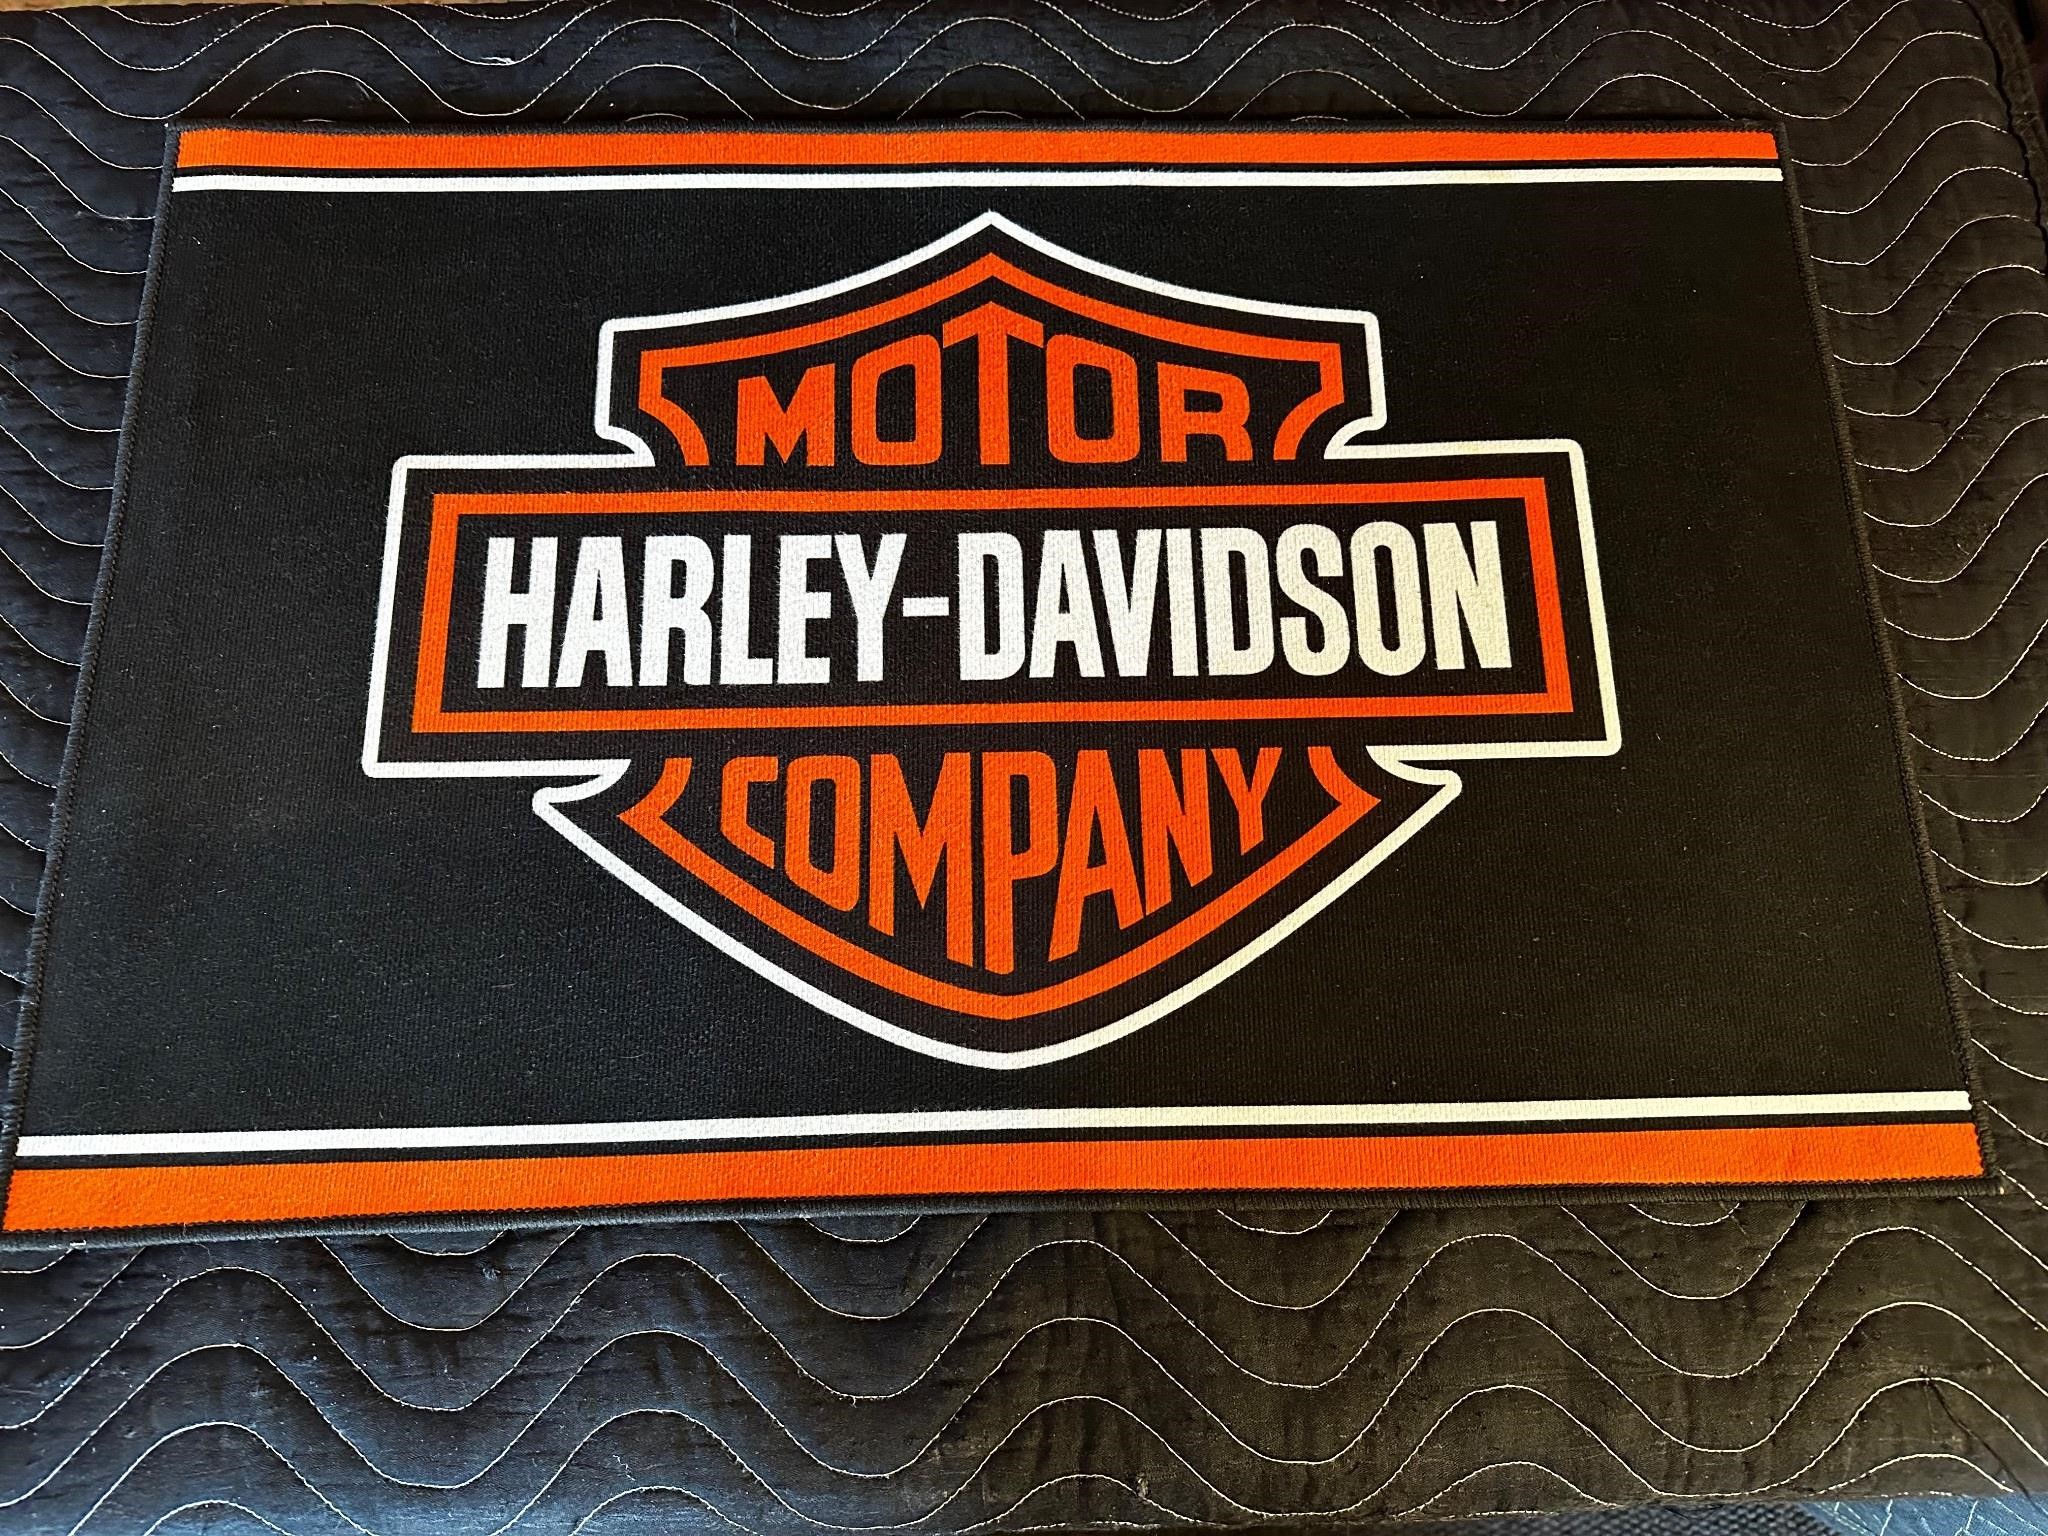 28 x 18” Harley Davidson Door Mat